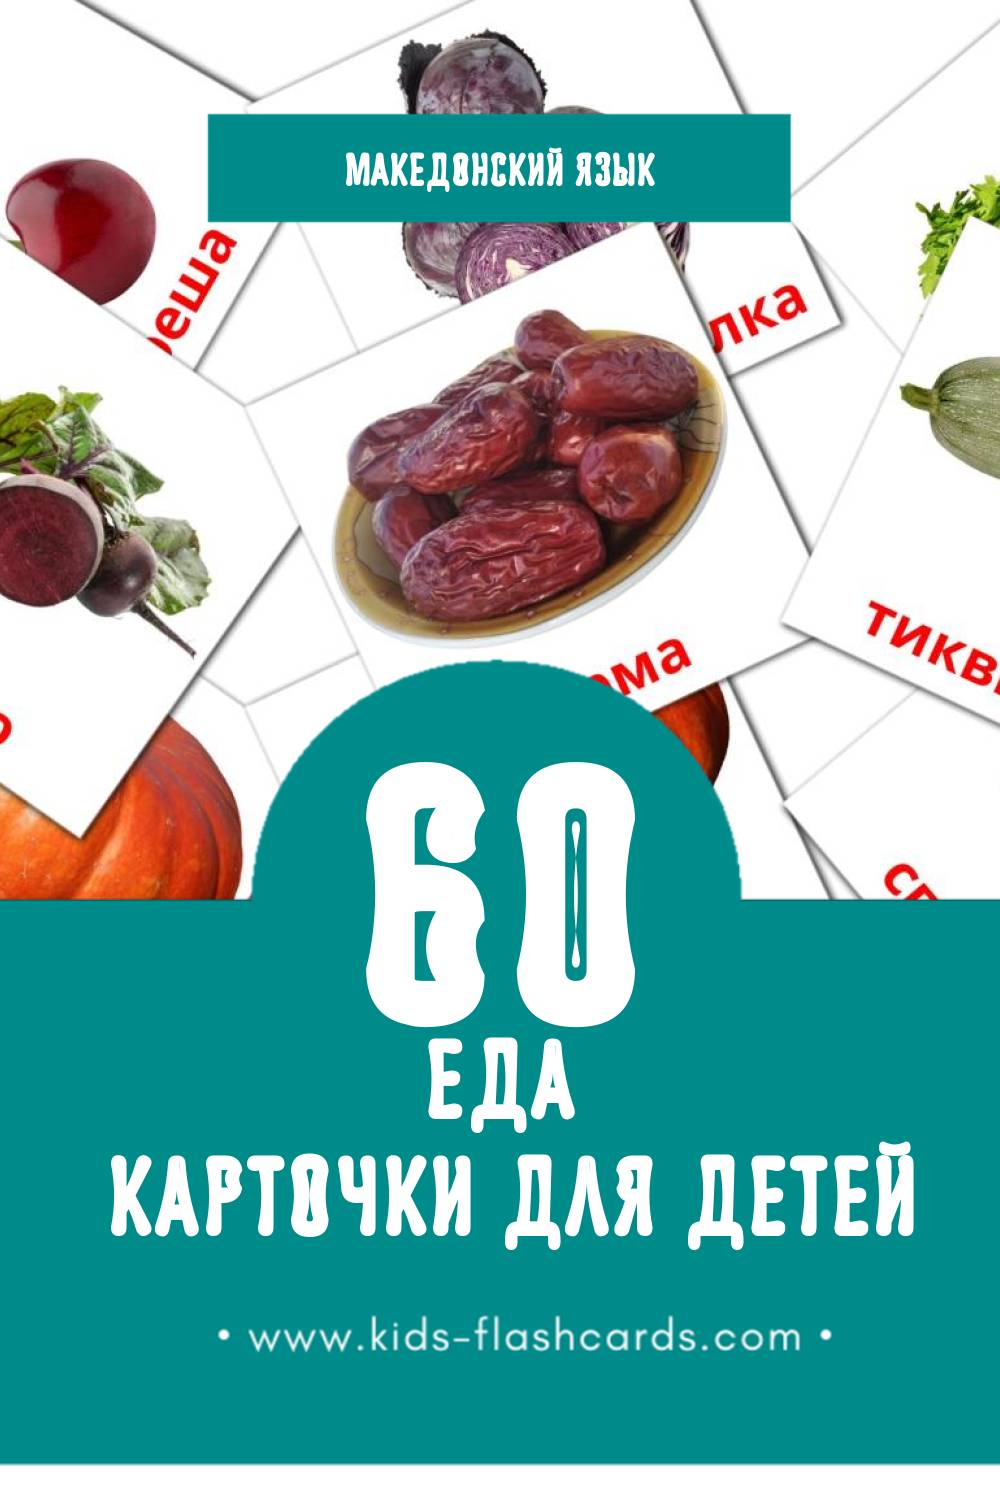 "Храна" - Визуальный Македонском Словарь для Малышей (60 картинок)